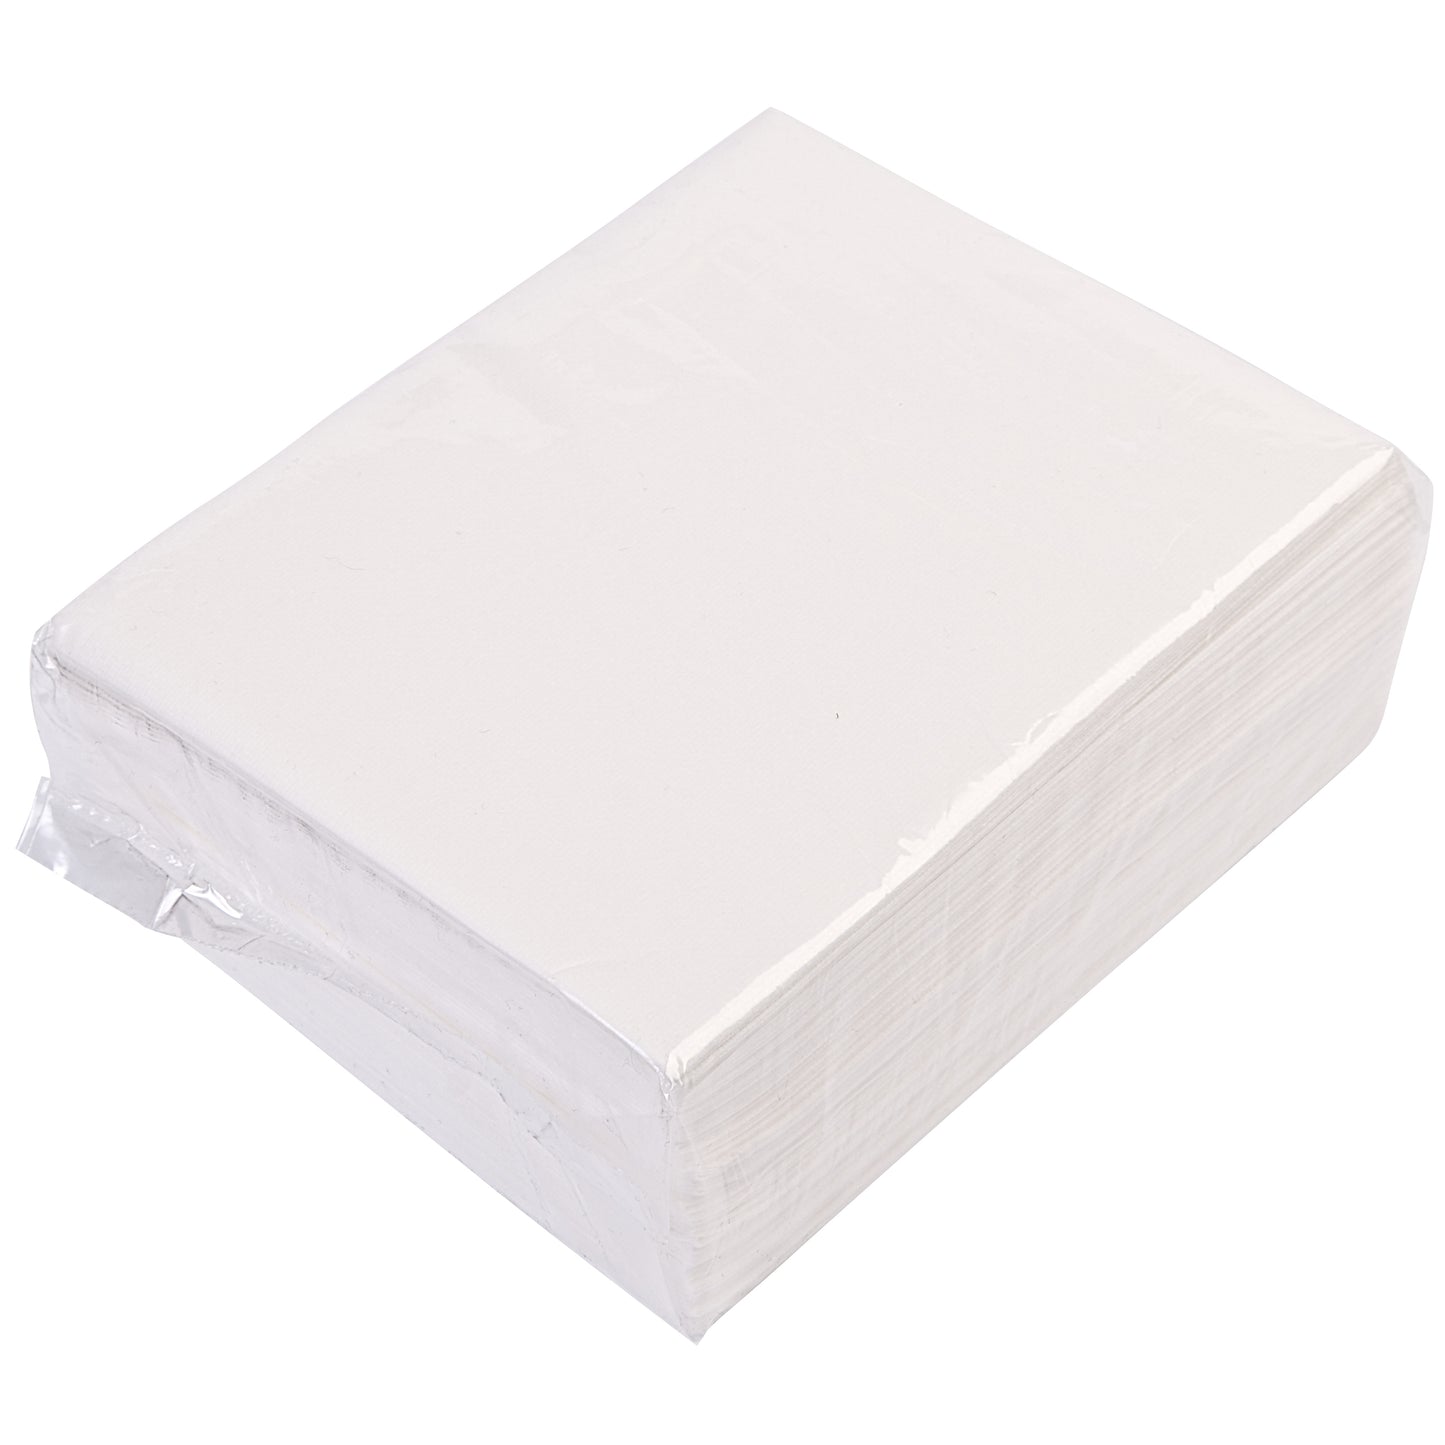 White Desk Towel Pack 50 - Case of 20